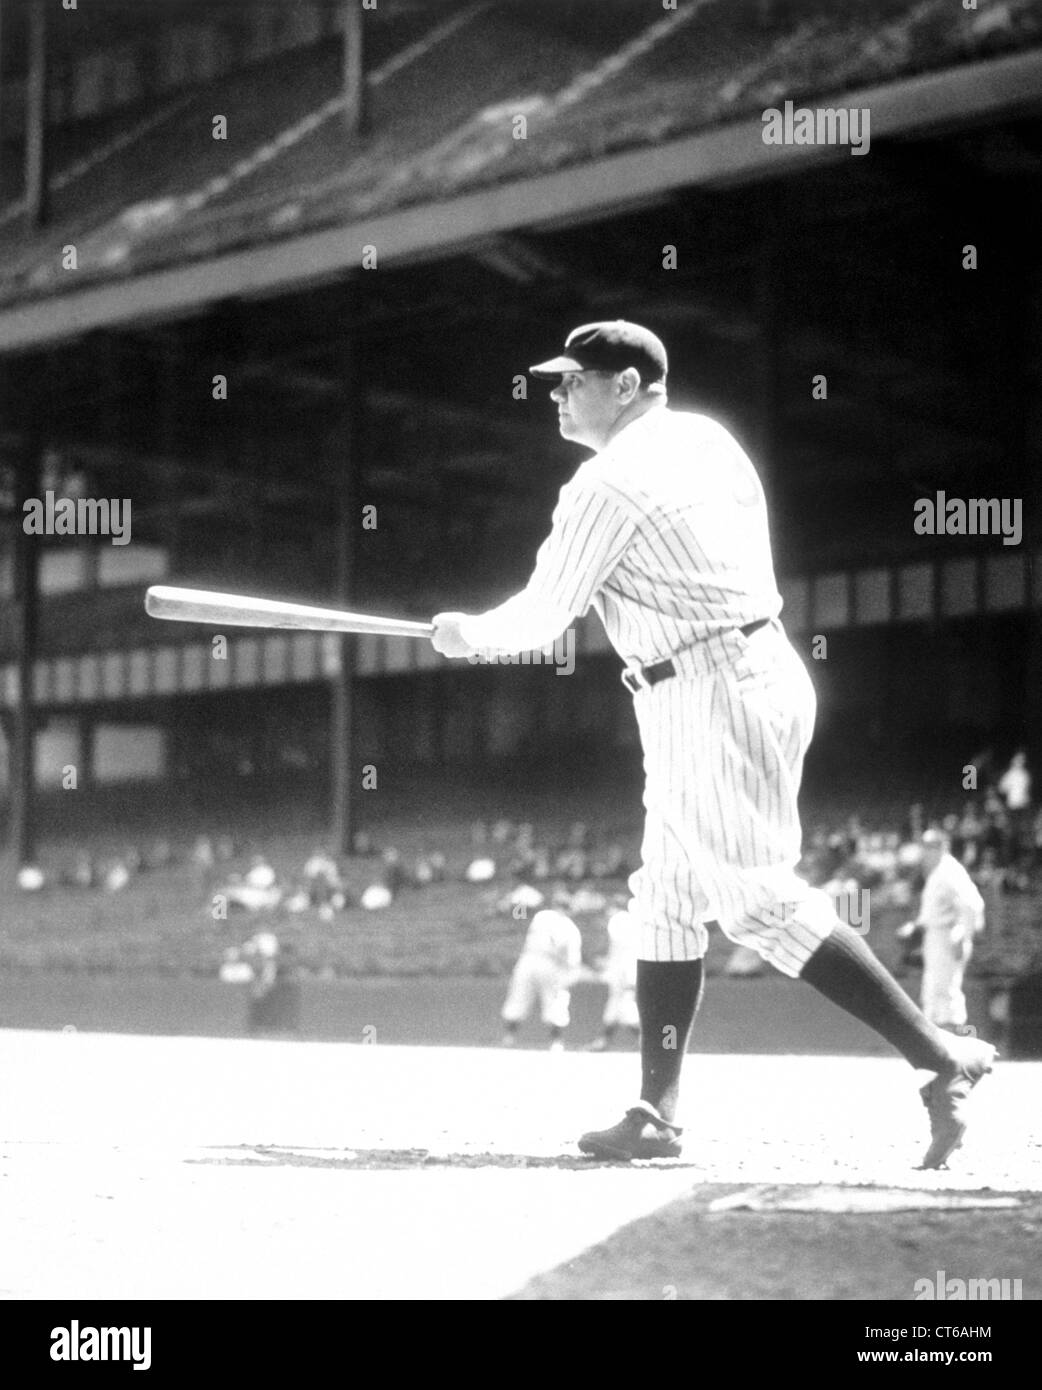 Babe Ruth at bat, 1934 Stock Photo